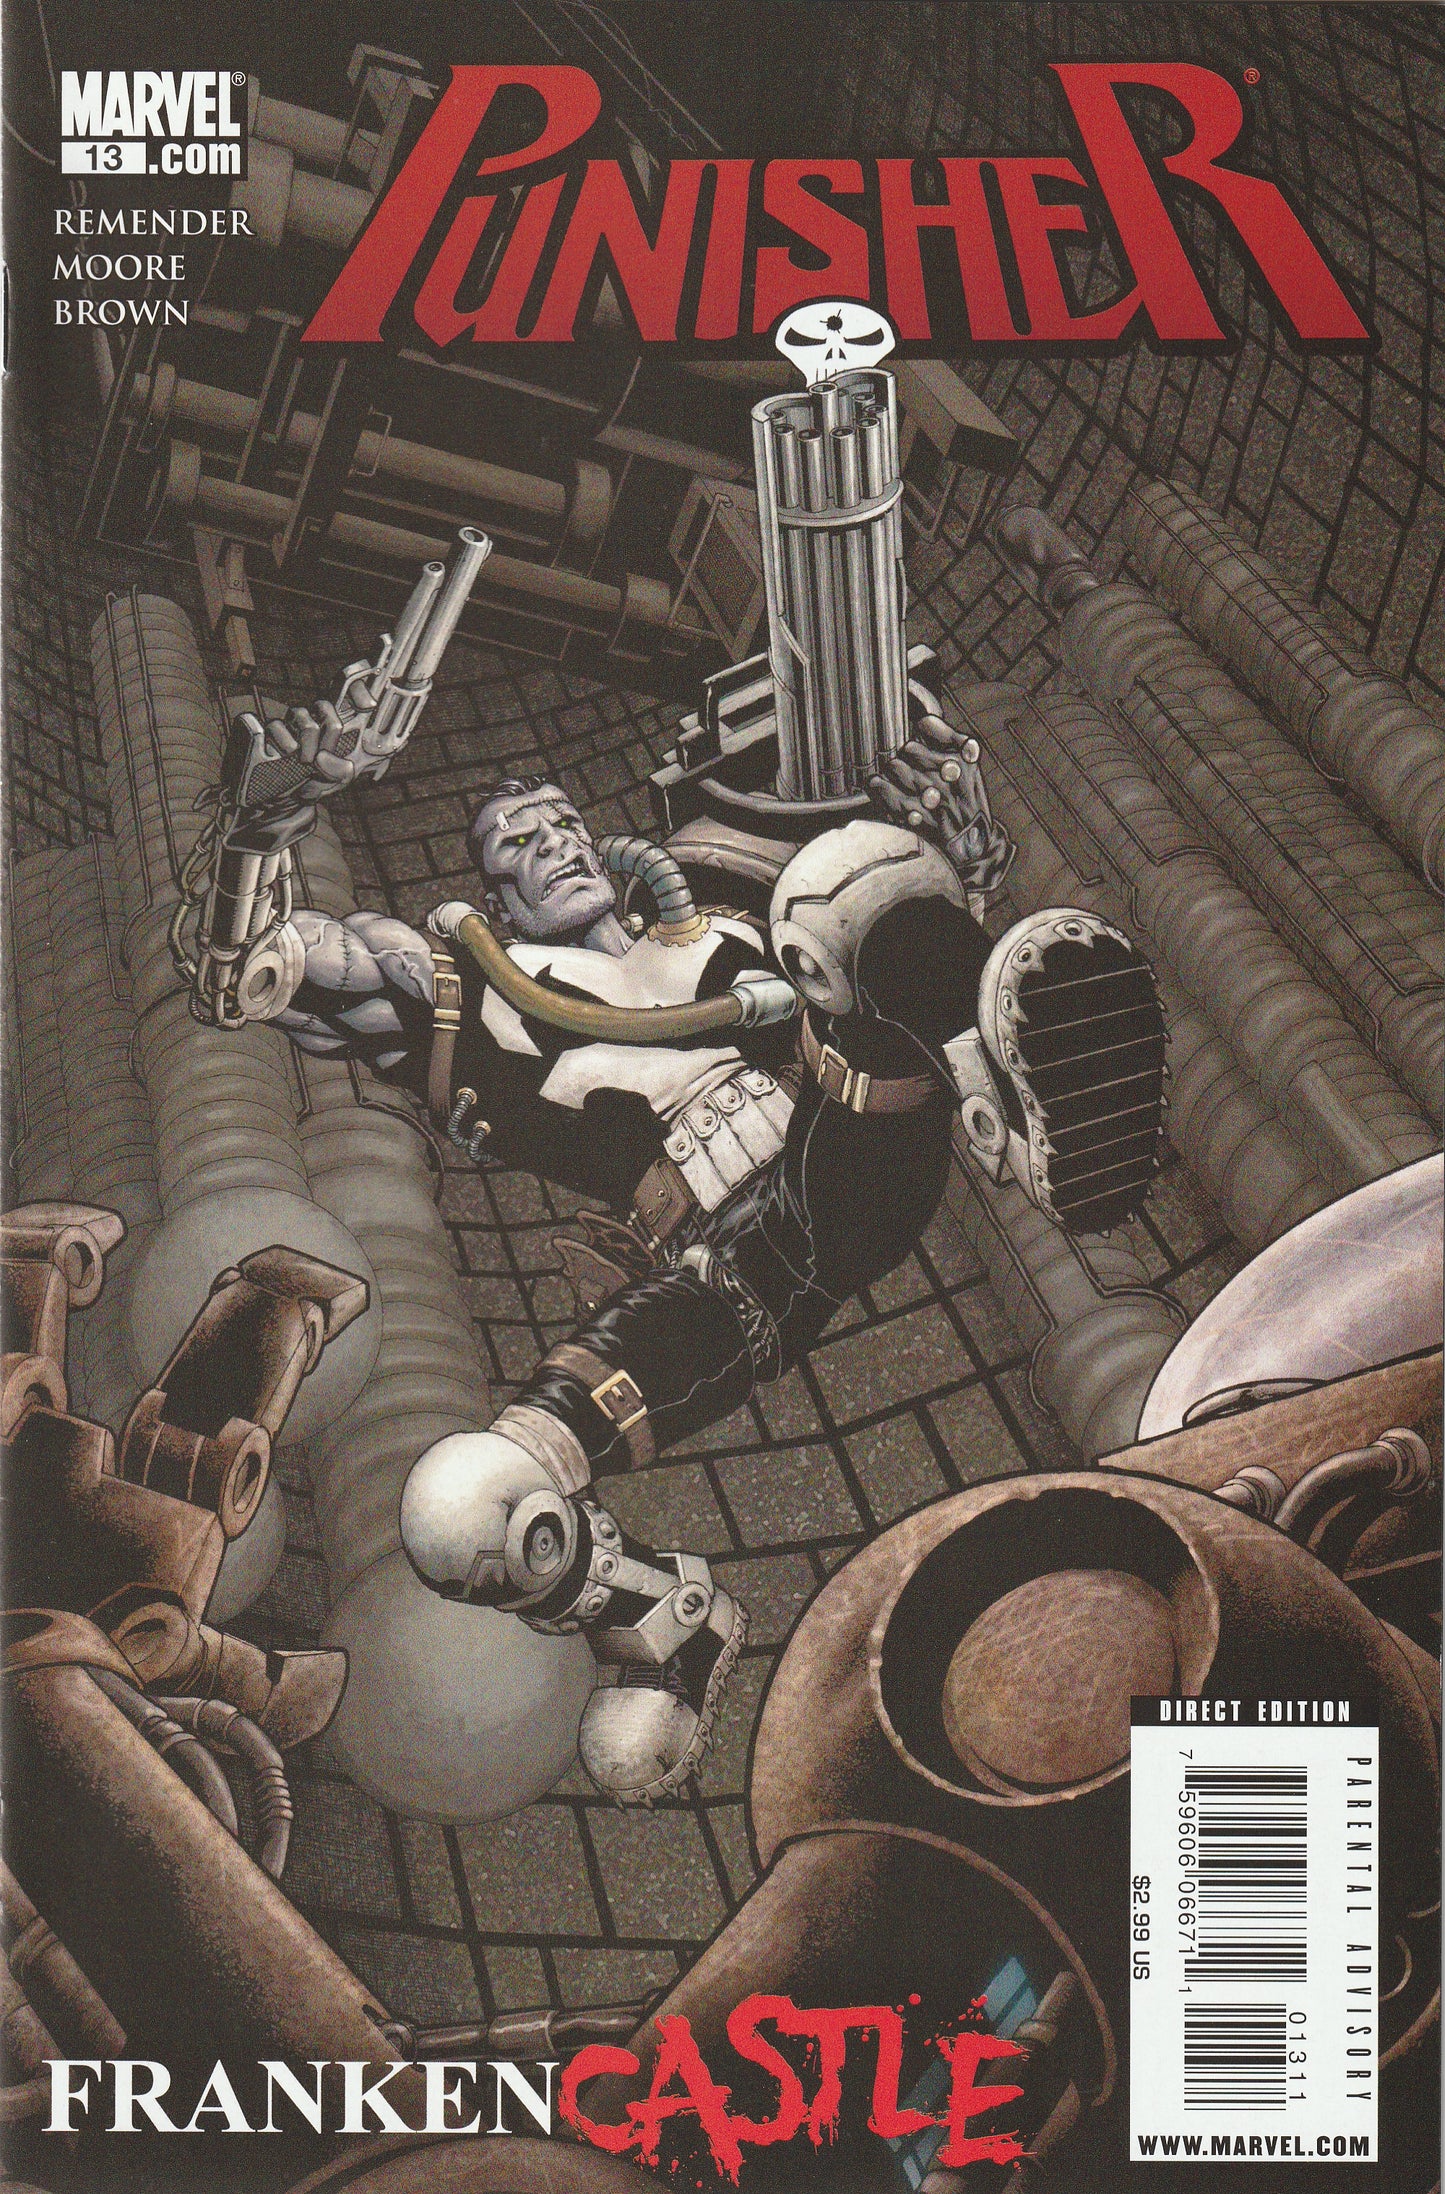 The Punisher #13 (Vol 8, 2010) - Franken-Castle